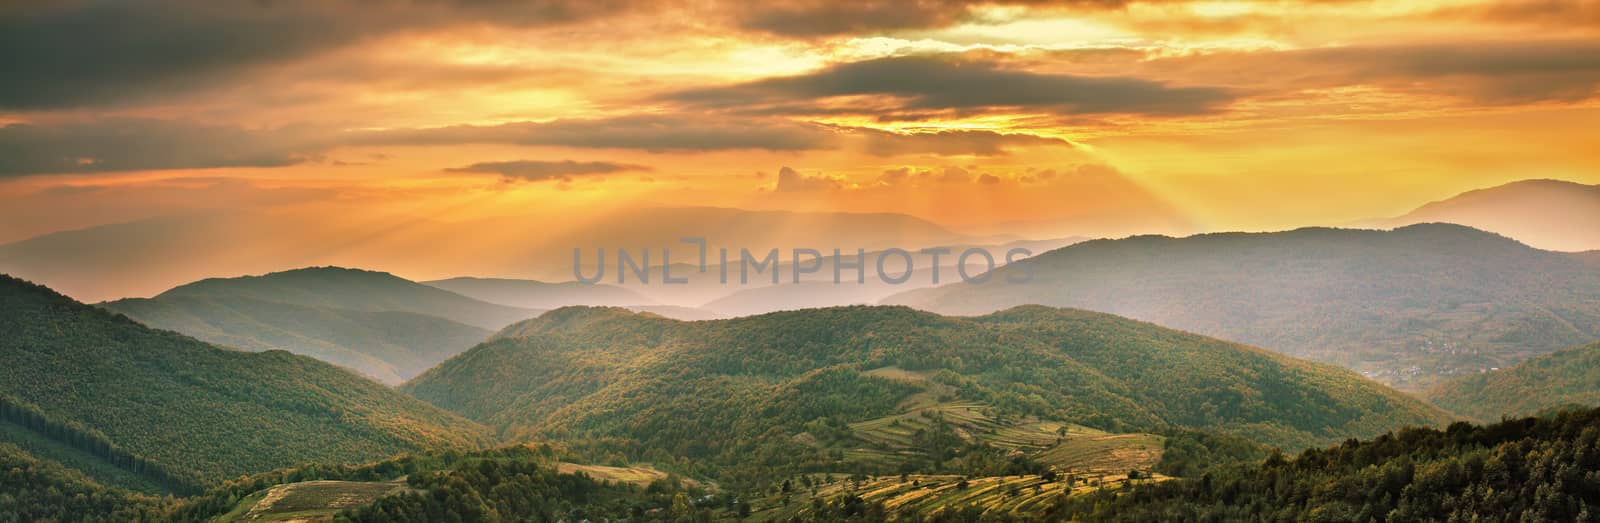 Colorful mountain sunset panorama. Autumn alpine village scene